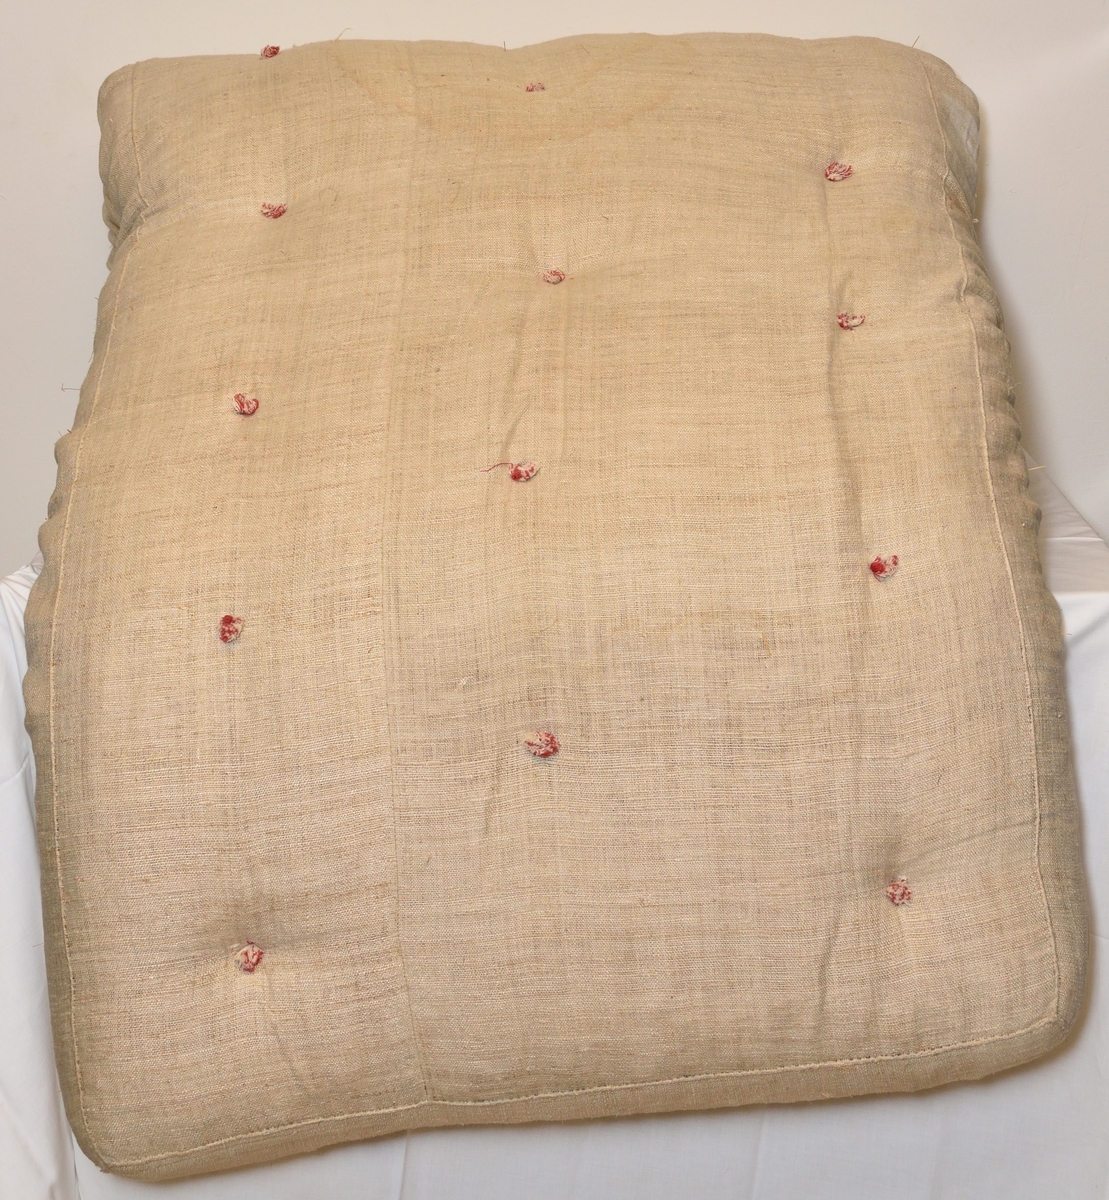 Madrass tillverkad i grovt lingarn, med halmstoppning. Puskor i rött och vitt garn.